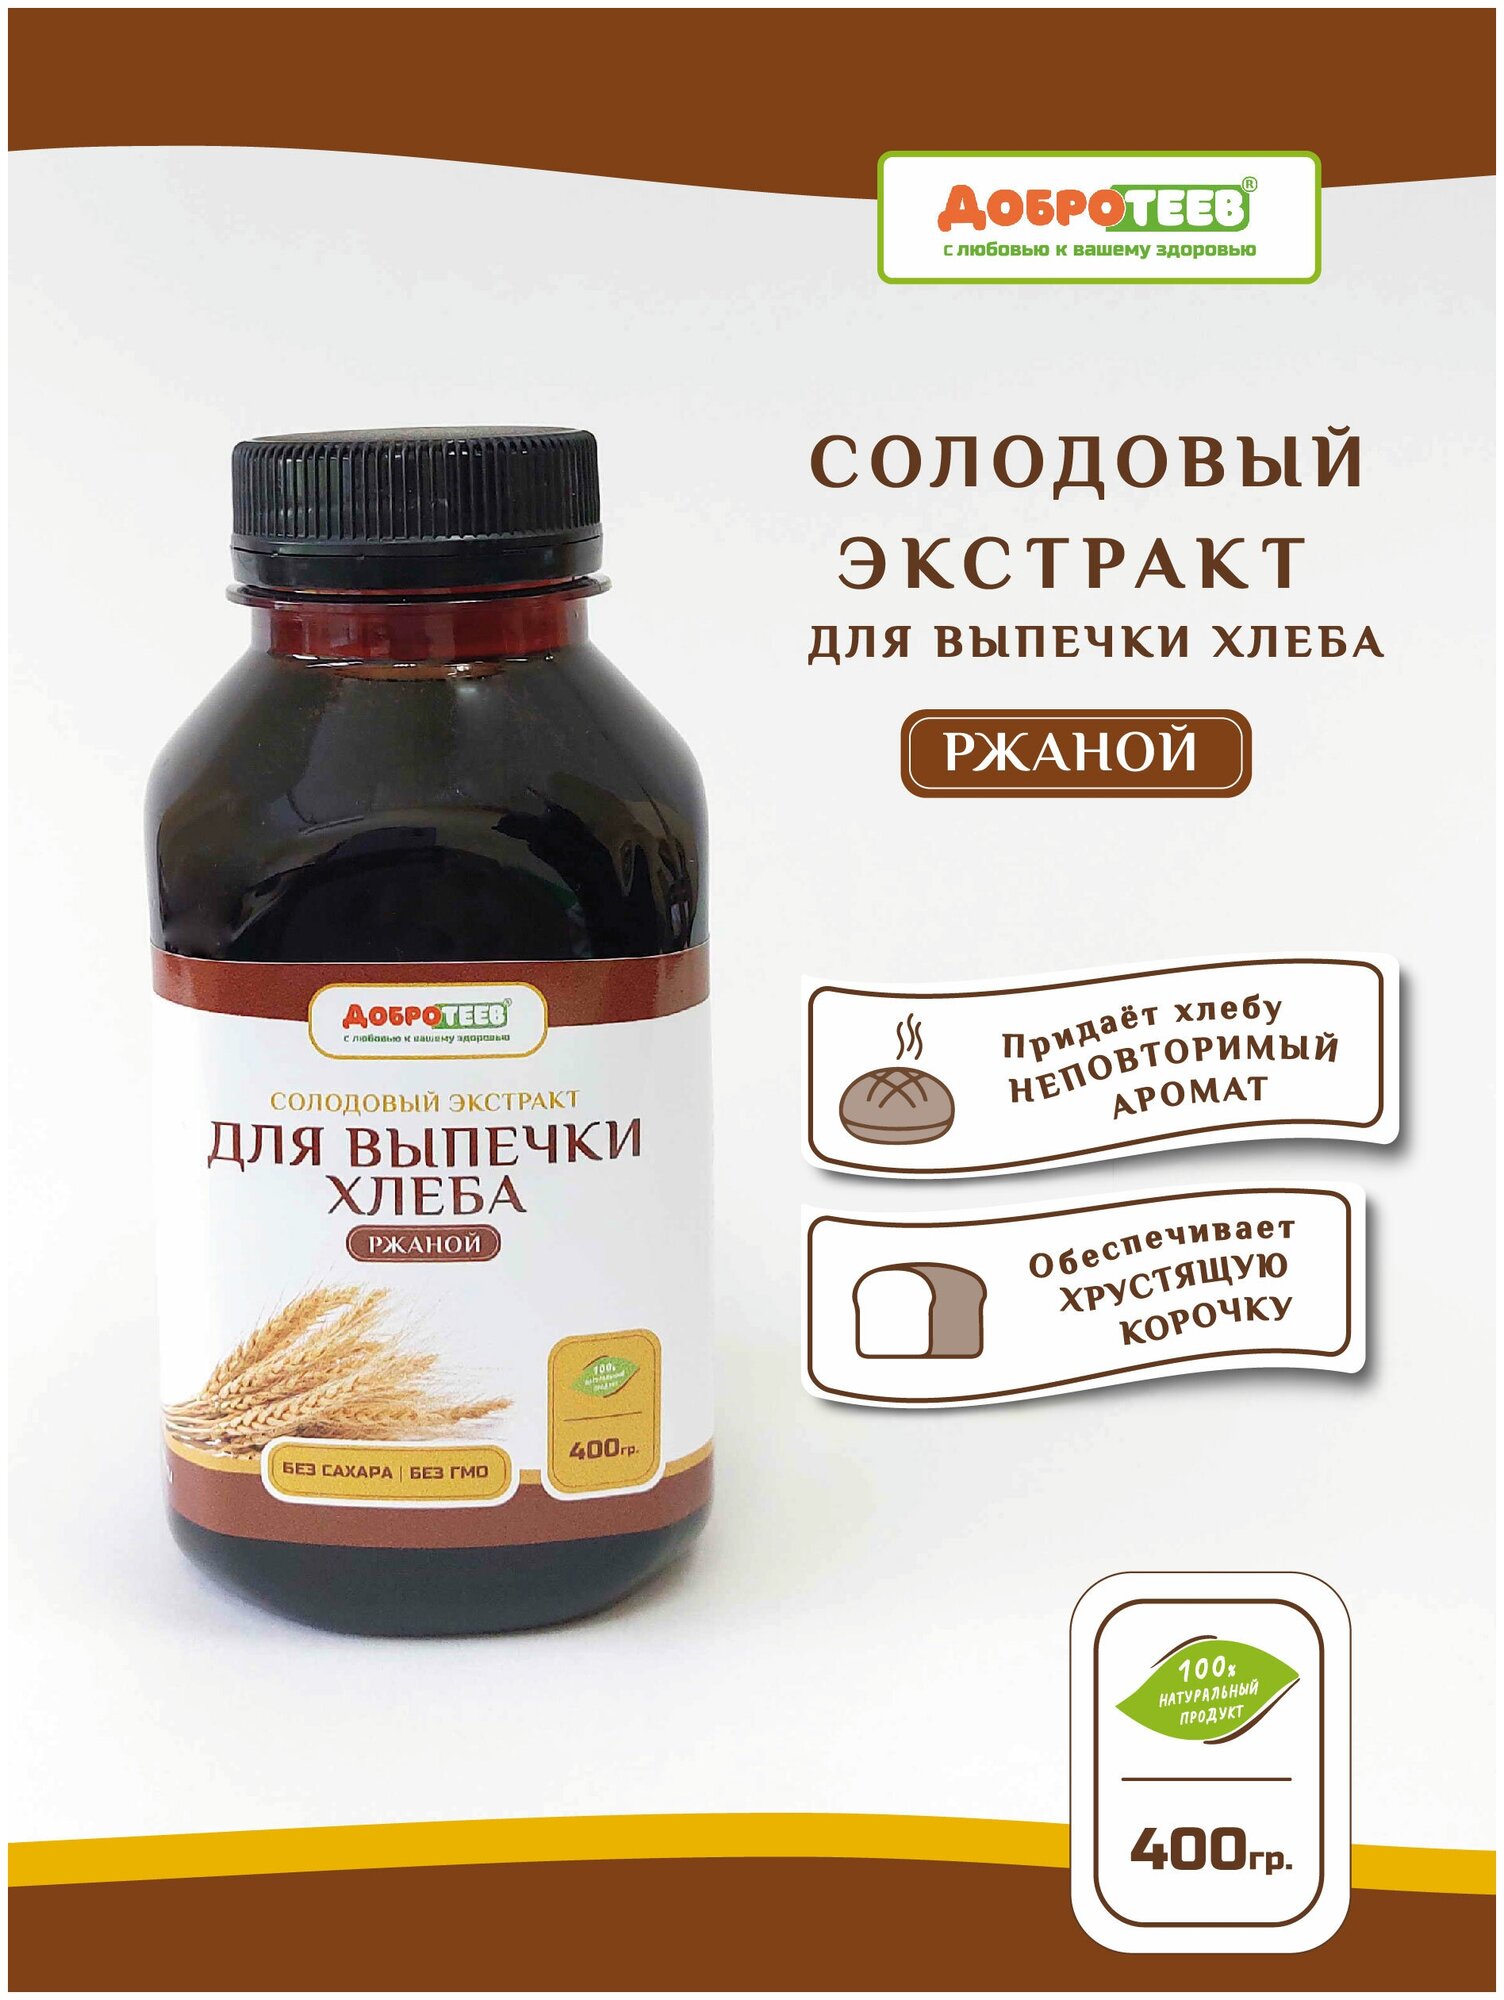 Солодовый экстракт для выпечки хлеба (ржаной) 400г ТМ Добротеев